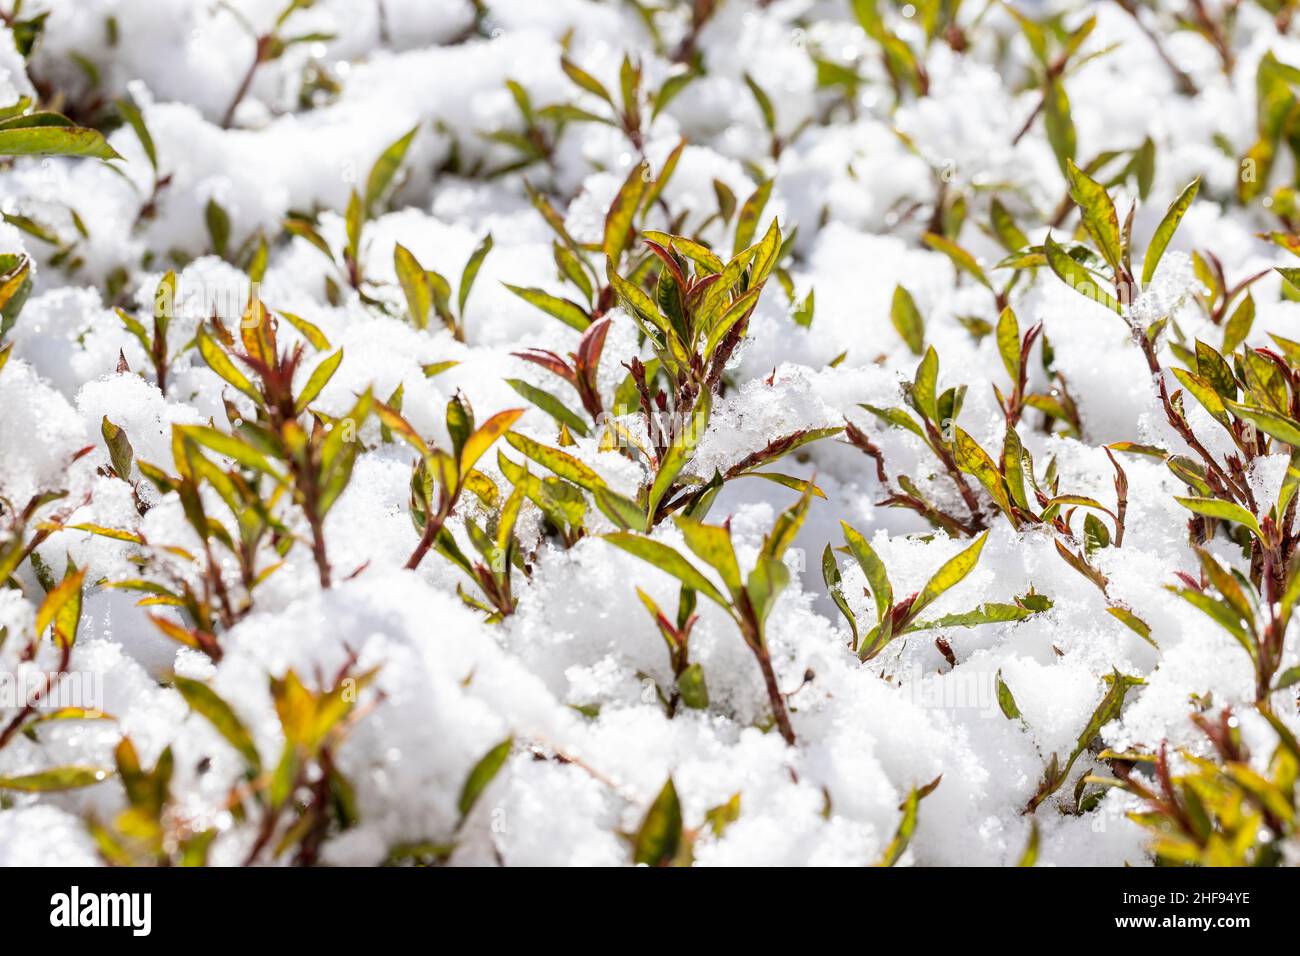 Arbuste Prescot Arizona Photinia frasera avec de la neige et des cristaux de glace sur les feuilles Banque D'Images